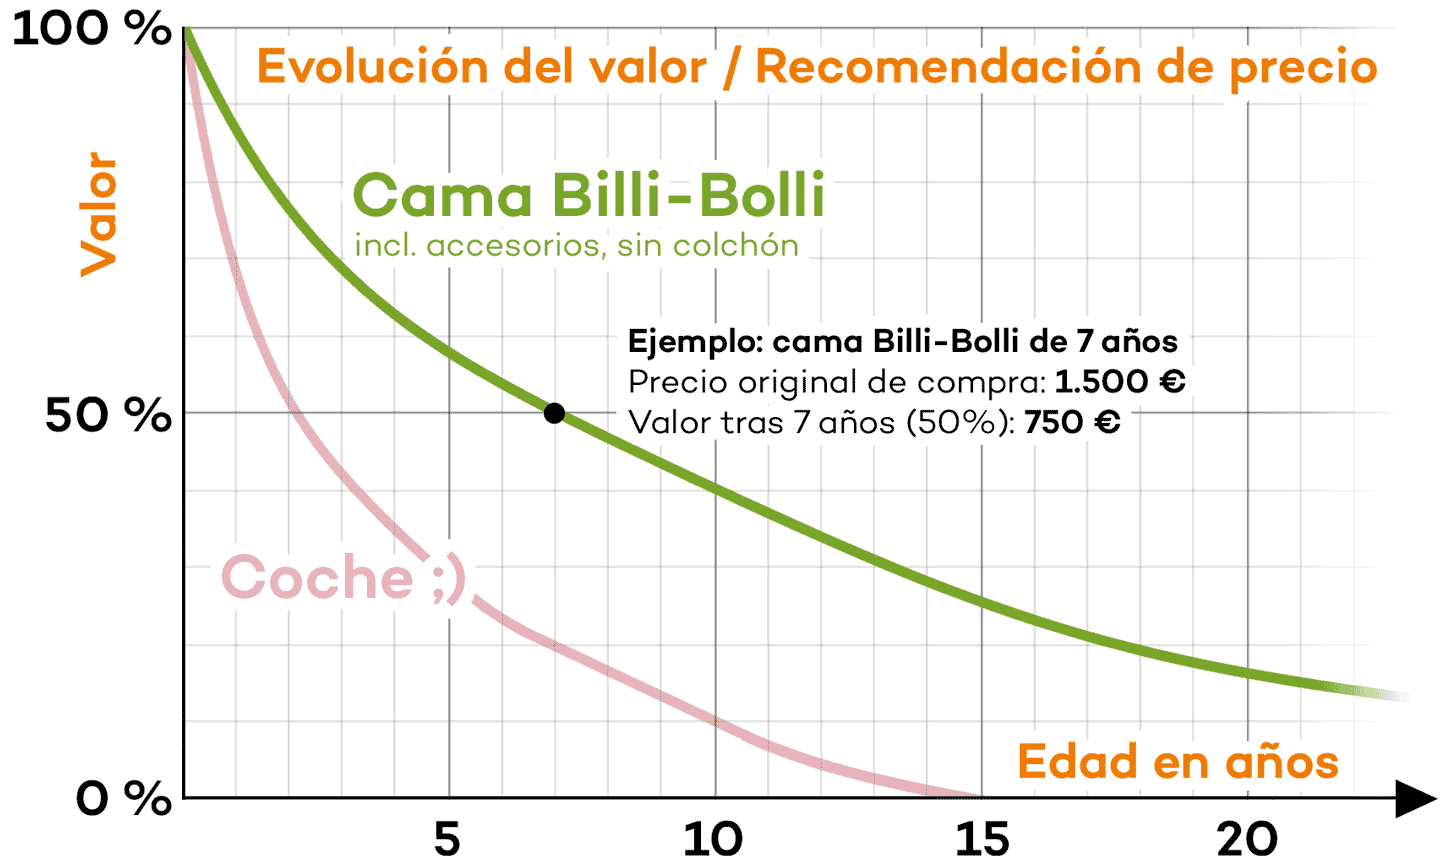 Evolución del valor / Recomendación de precio de venta para camas Billi-Bolli